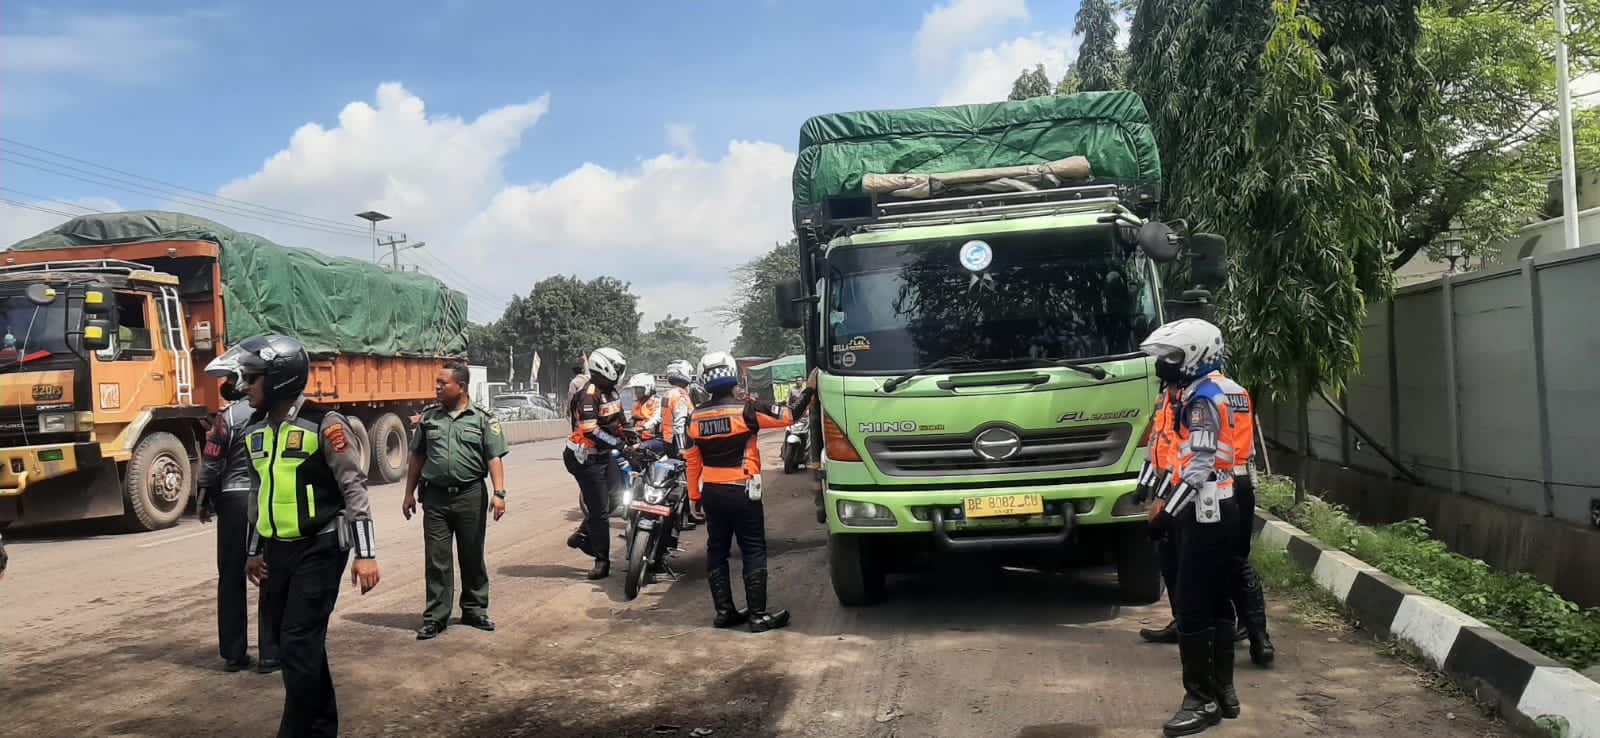 Sambut Mudik, Dishub Bandar Lampung Tertibkan Kendaraan Parkir di Bahu Jalan Yos Sudarso